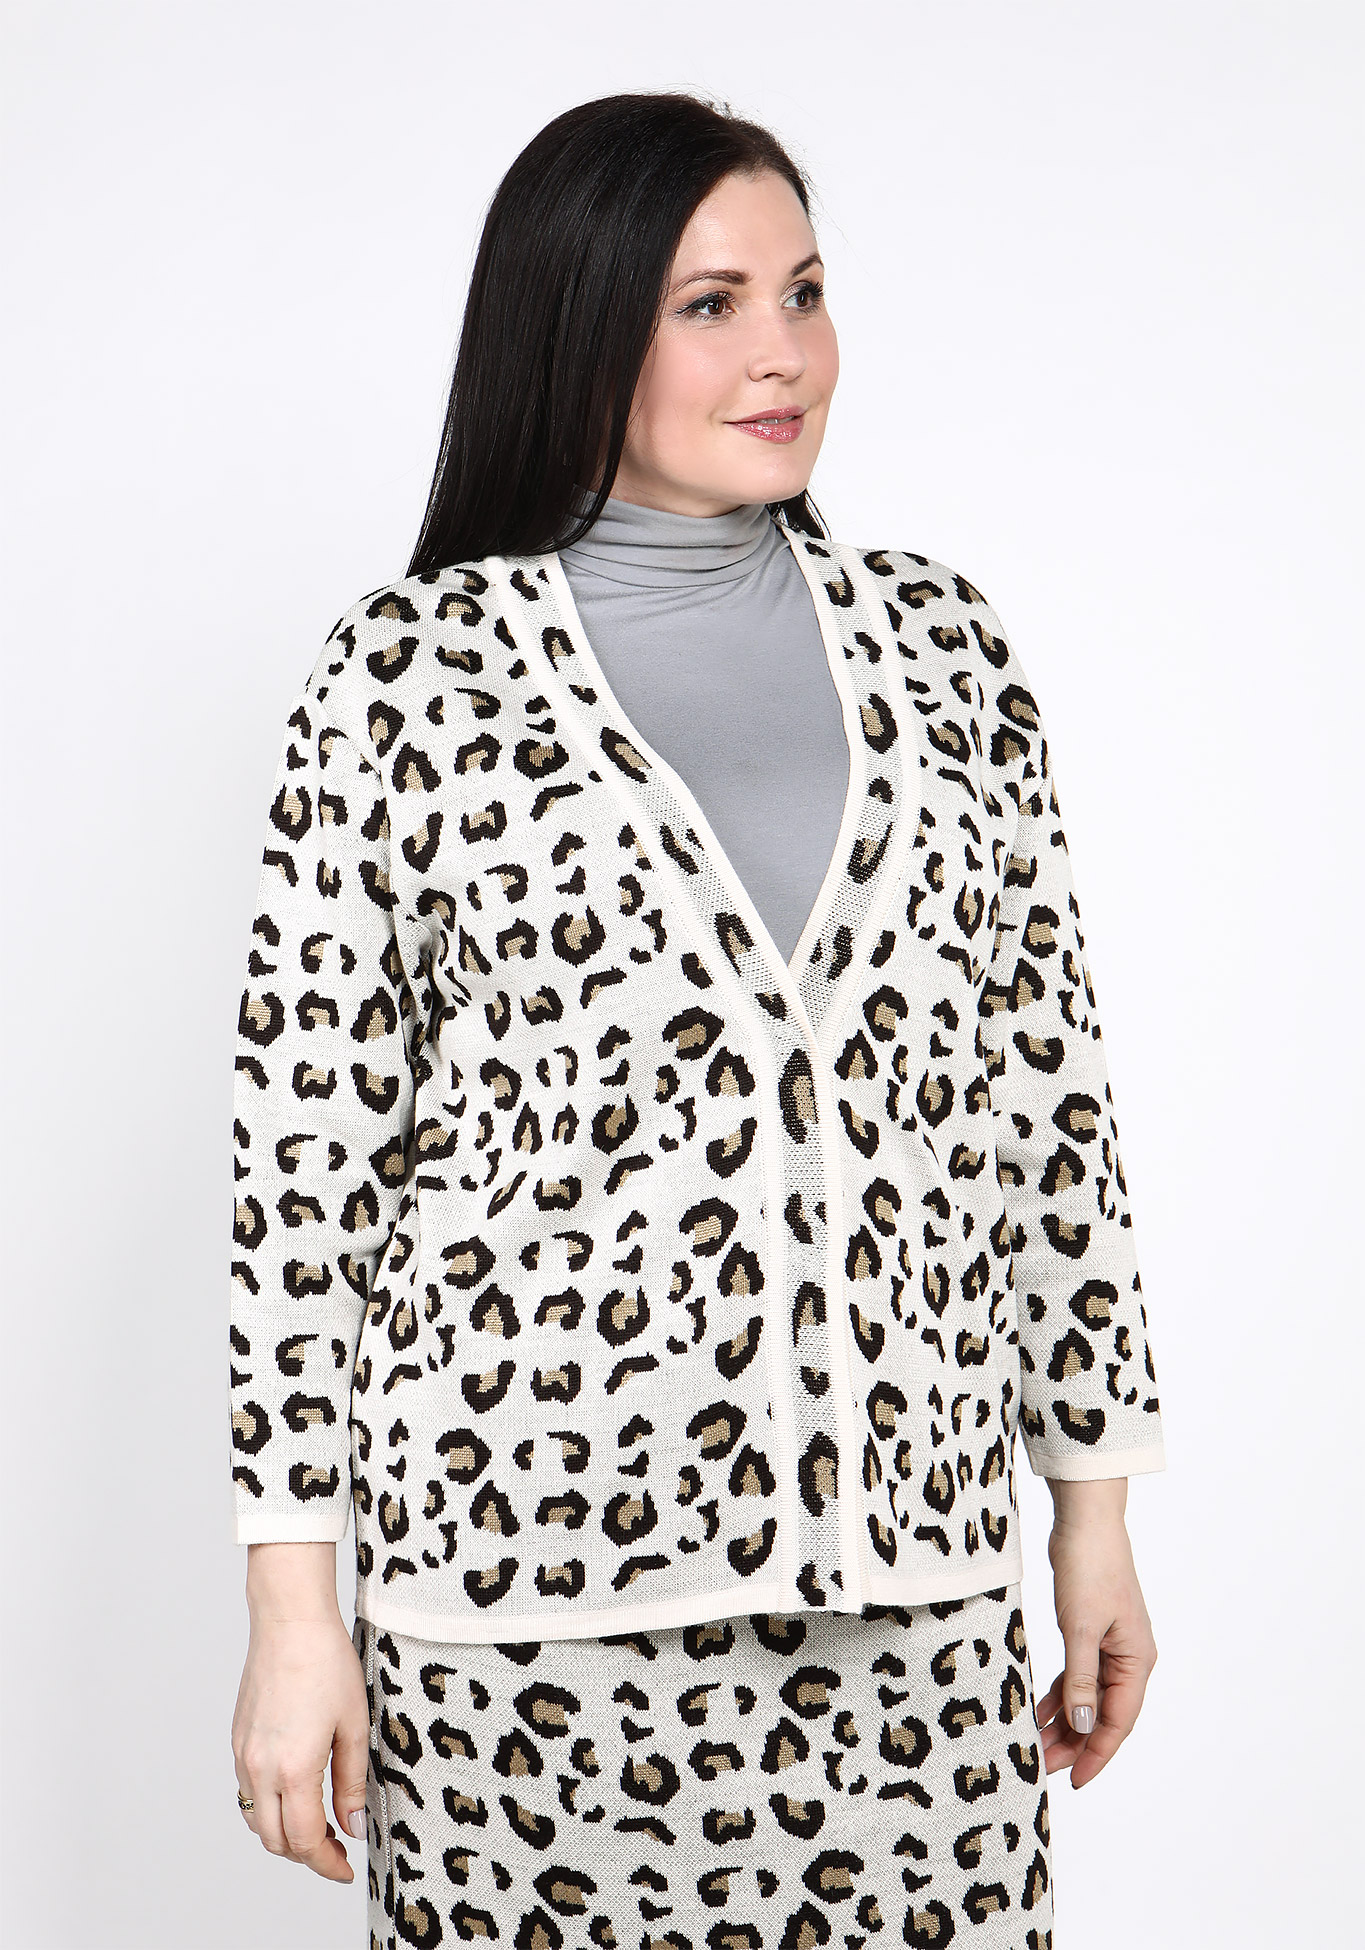 Жакет с леопардовым принтом Vivawool, размер 48, цвет молочный - фото 7